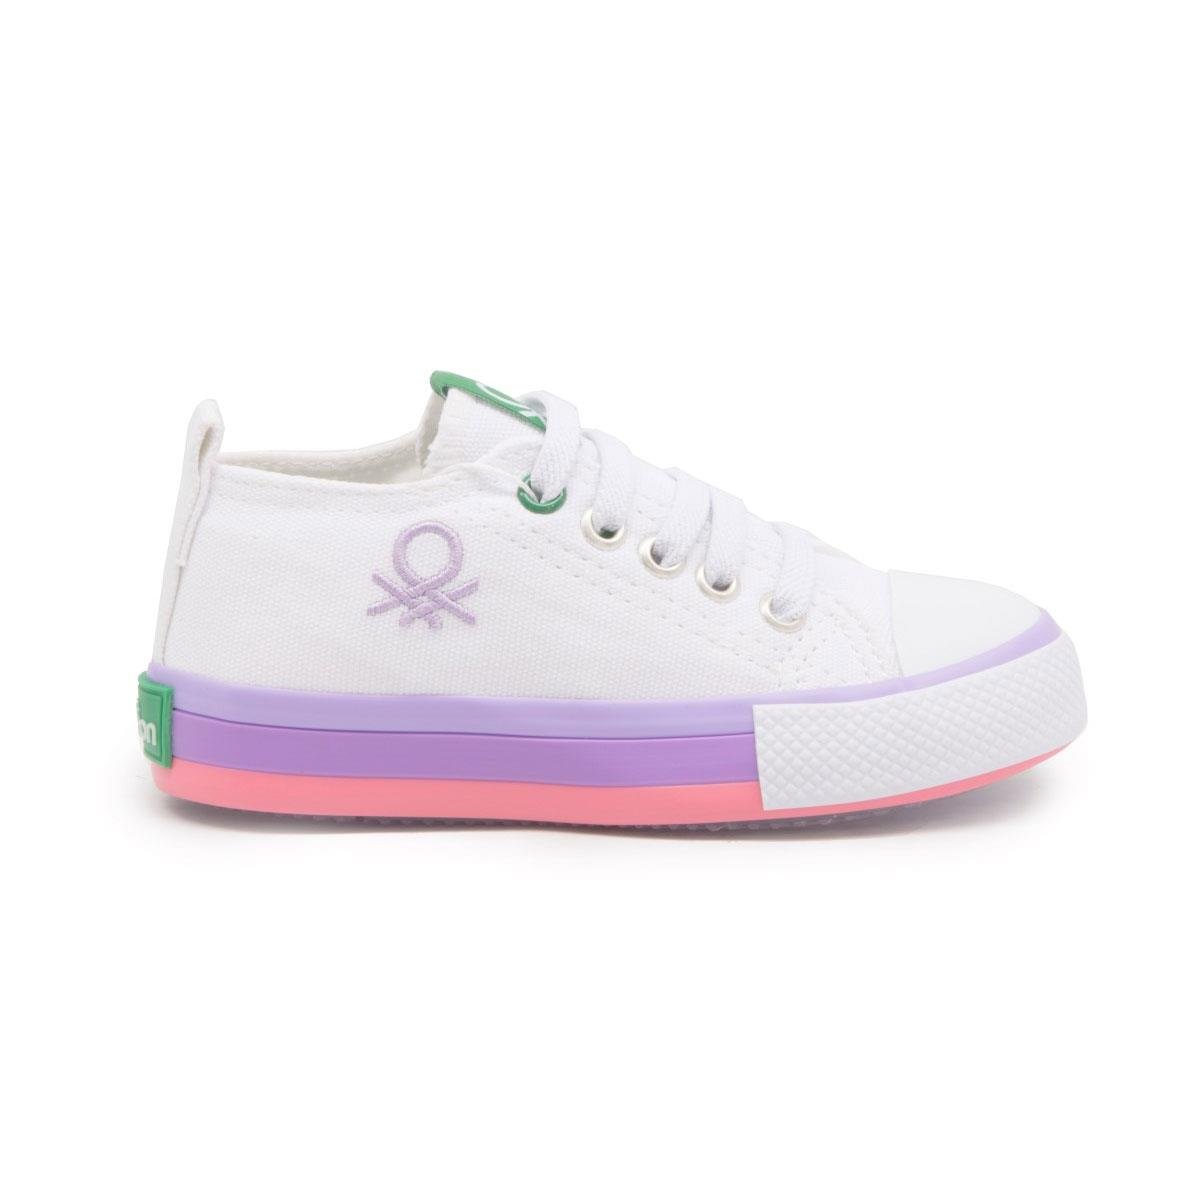 Kız Çocuk Spor Ayakkabı BN-30653 Benetton 316-Beyaz-Lila